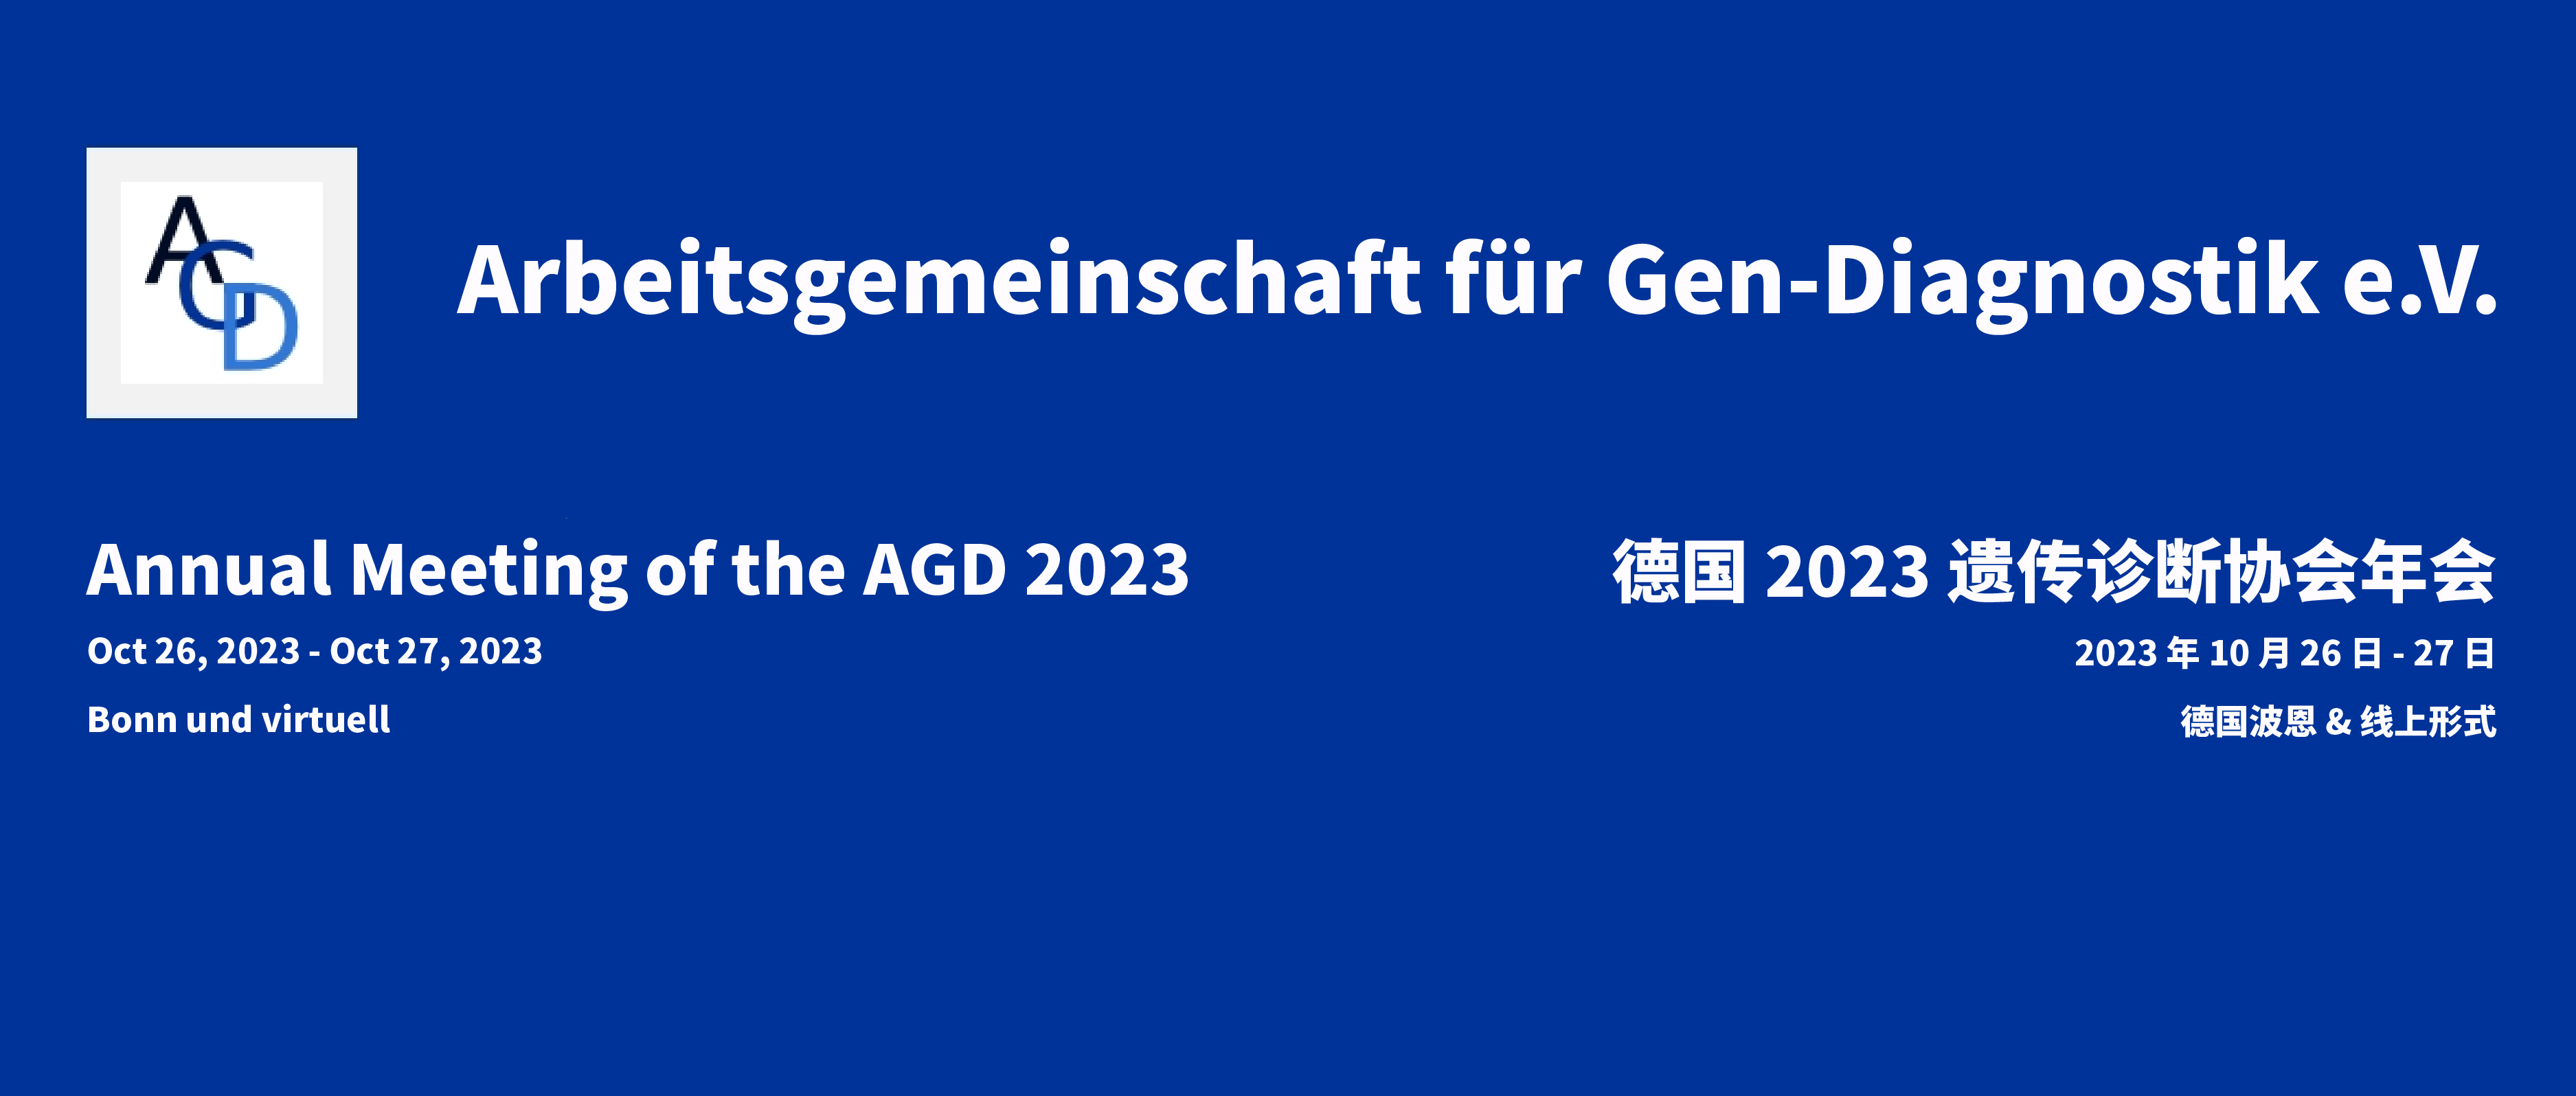 海外展会预告 | 纳昂达邀您相约德国 2023 遗传诊断协会年会